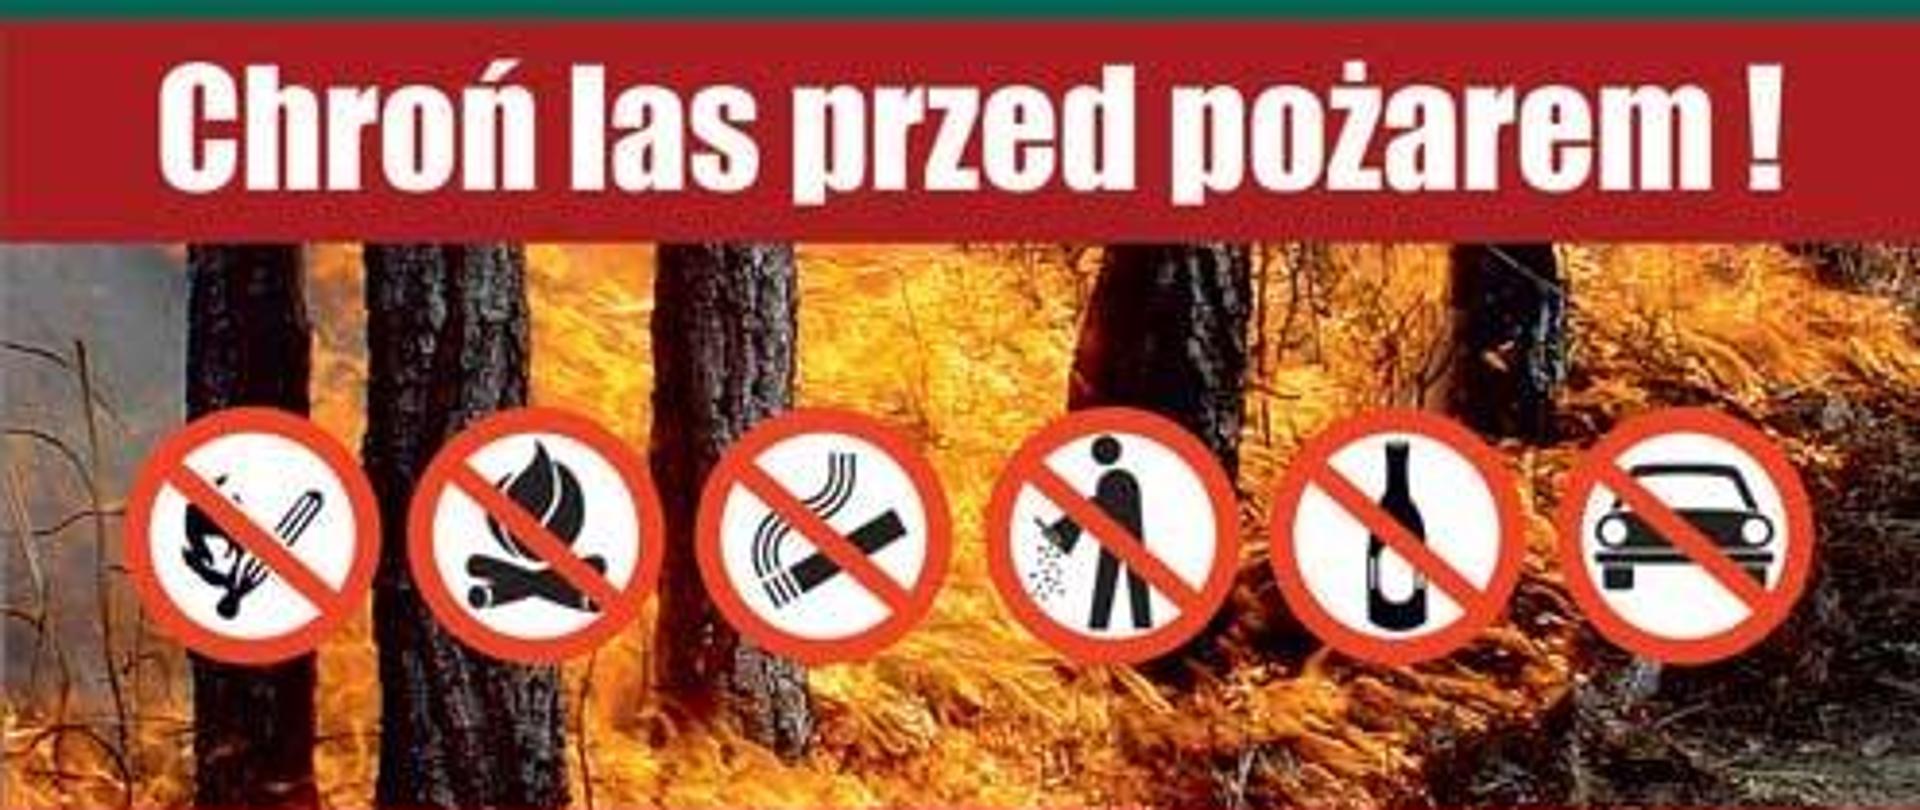 Zdjęcie przedstawia plakat w formie ulotki na której znajdują się informacje dotyczące zakazu używania otwartego ognia w lesie, wyrzucania butelek oraz wjazdu samochodem. Ponadto przedstawione są numery alarmowe 112 i 998